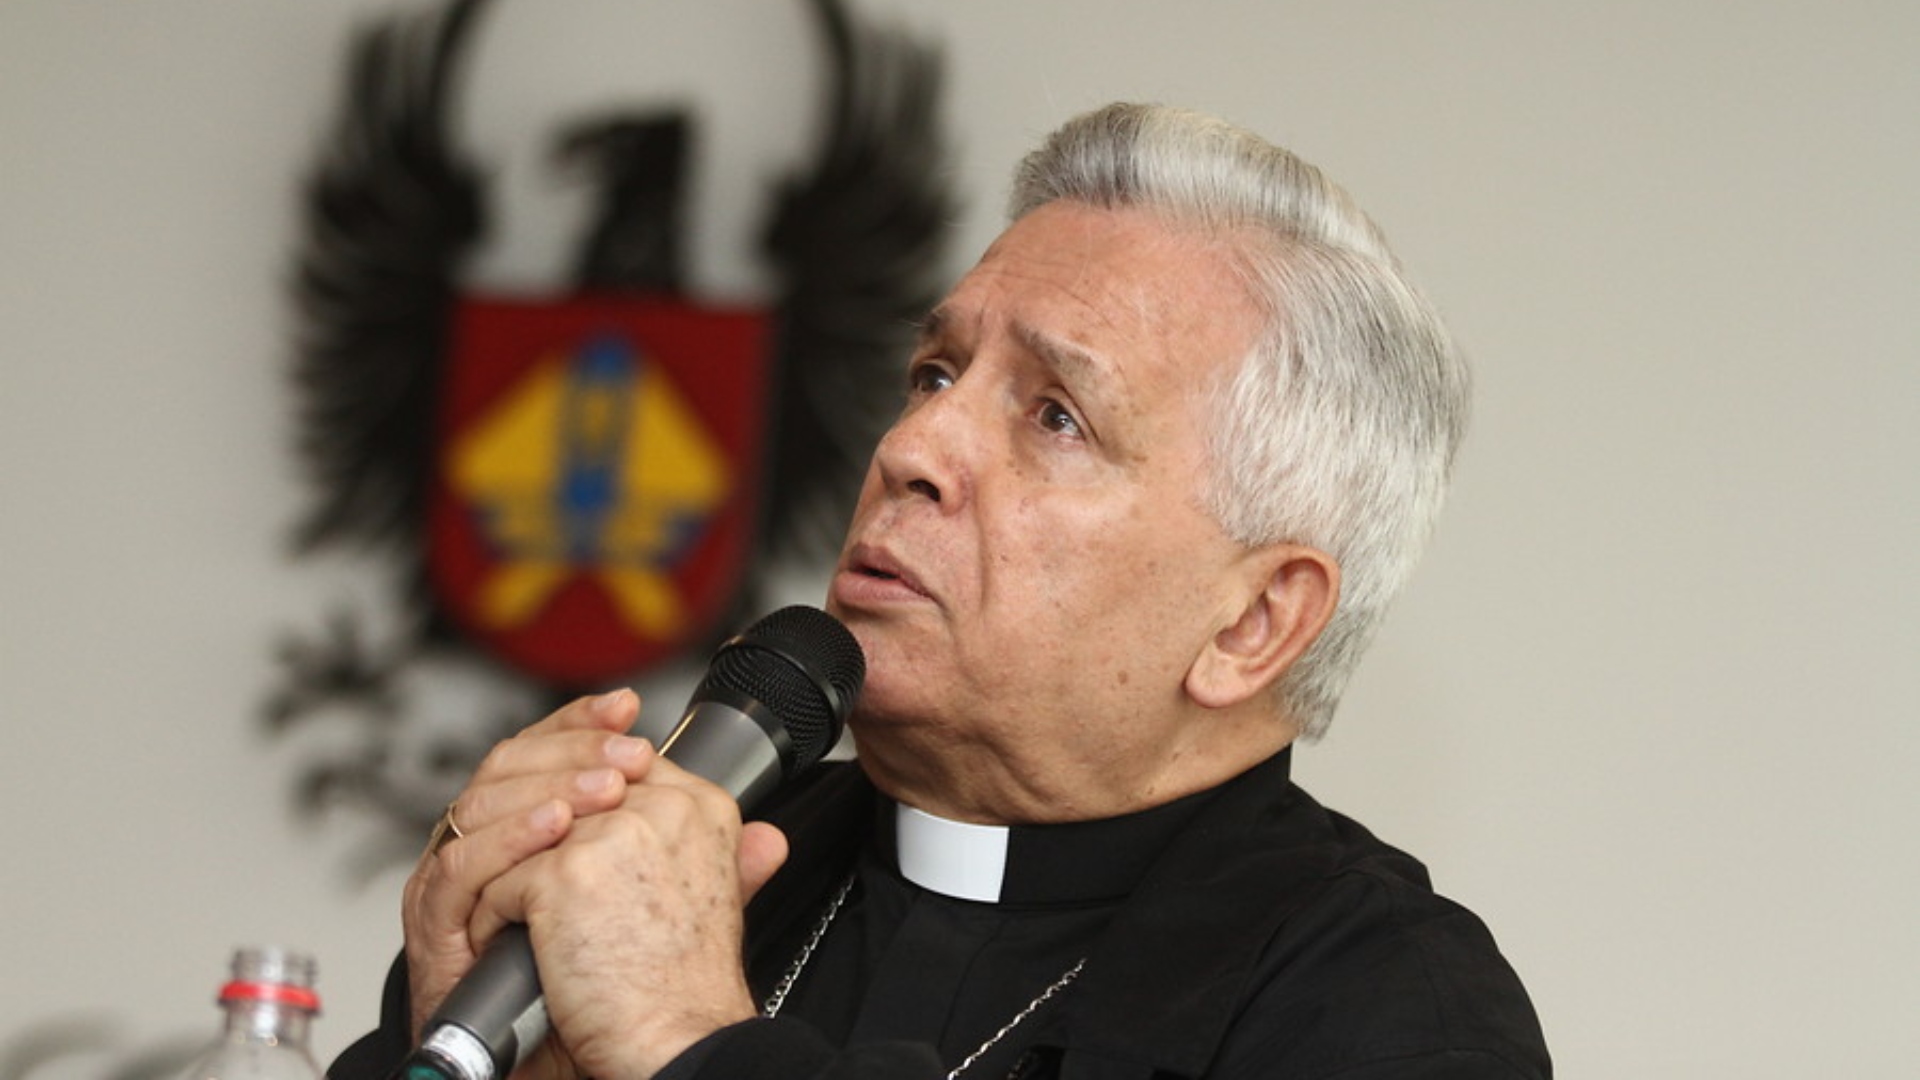 Renuncia de monseñor Darío de Jesús Monsalve, arzobispo de Cali, es aceptada por el Papa Francisco